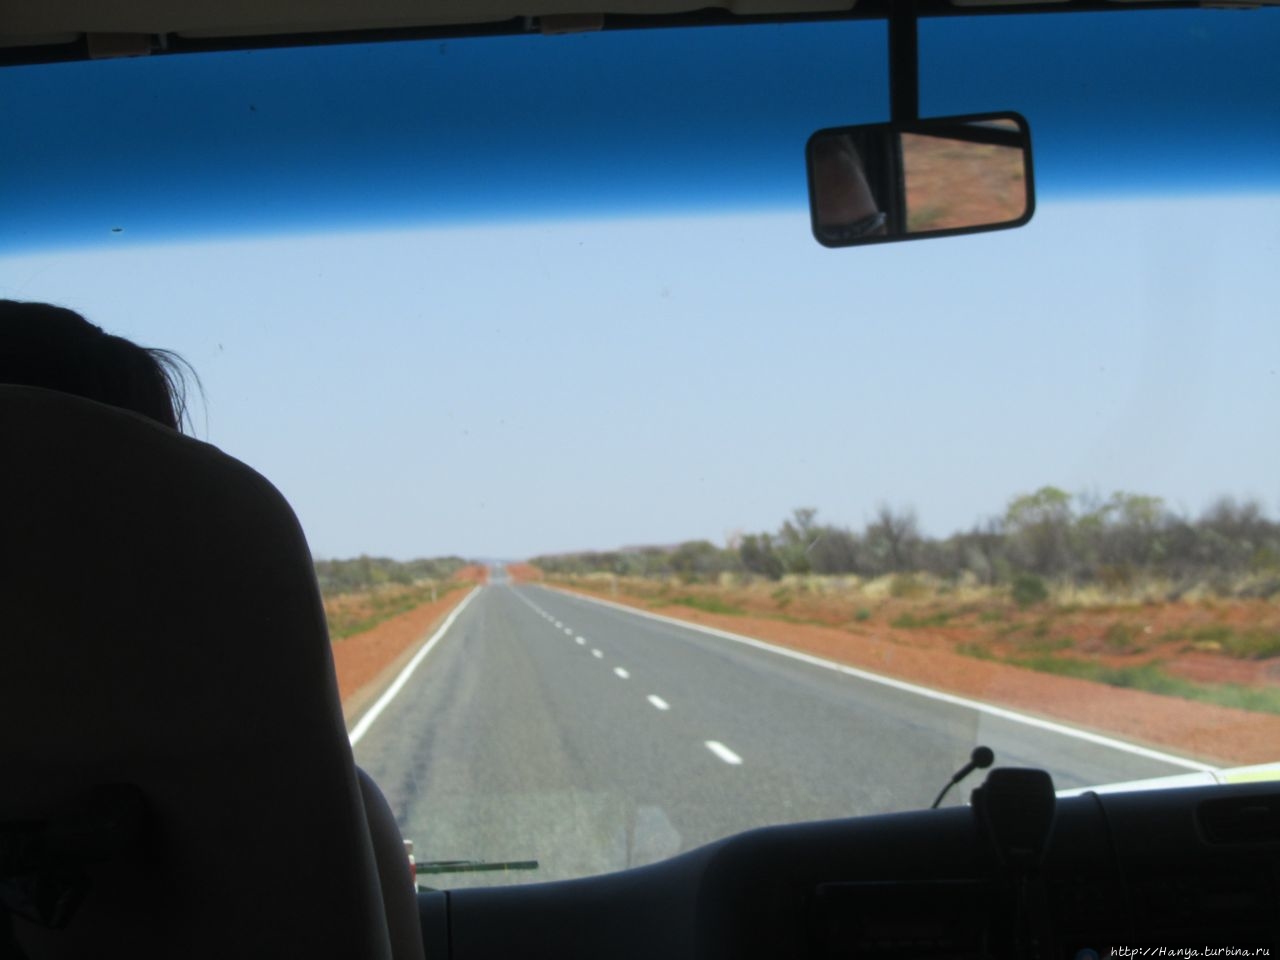 Стюарт-хайвэй:тянется дорога,дорога…и битые машины по бокам Северная территория, Австралия